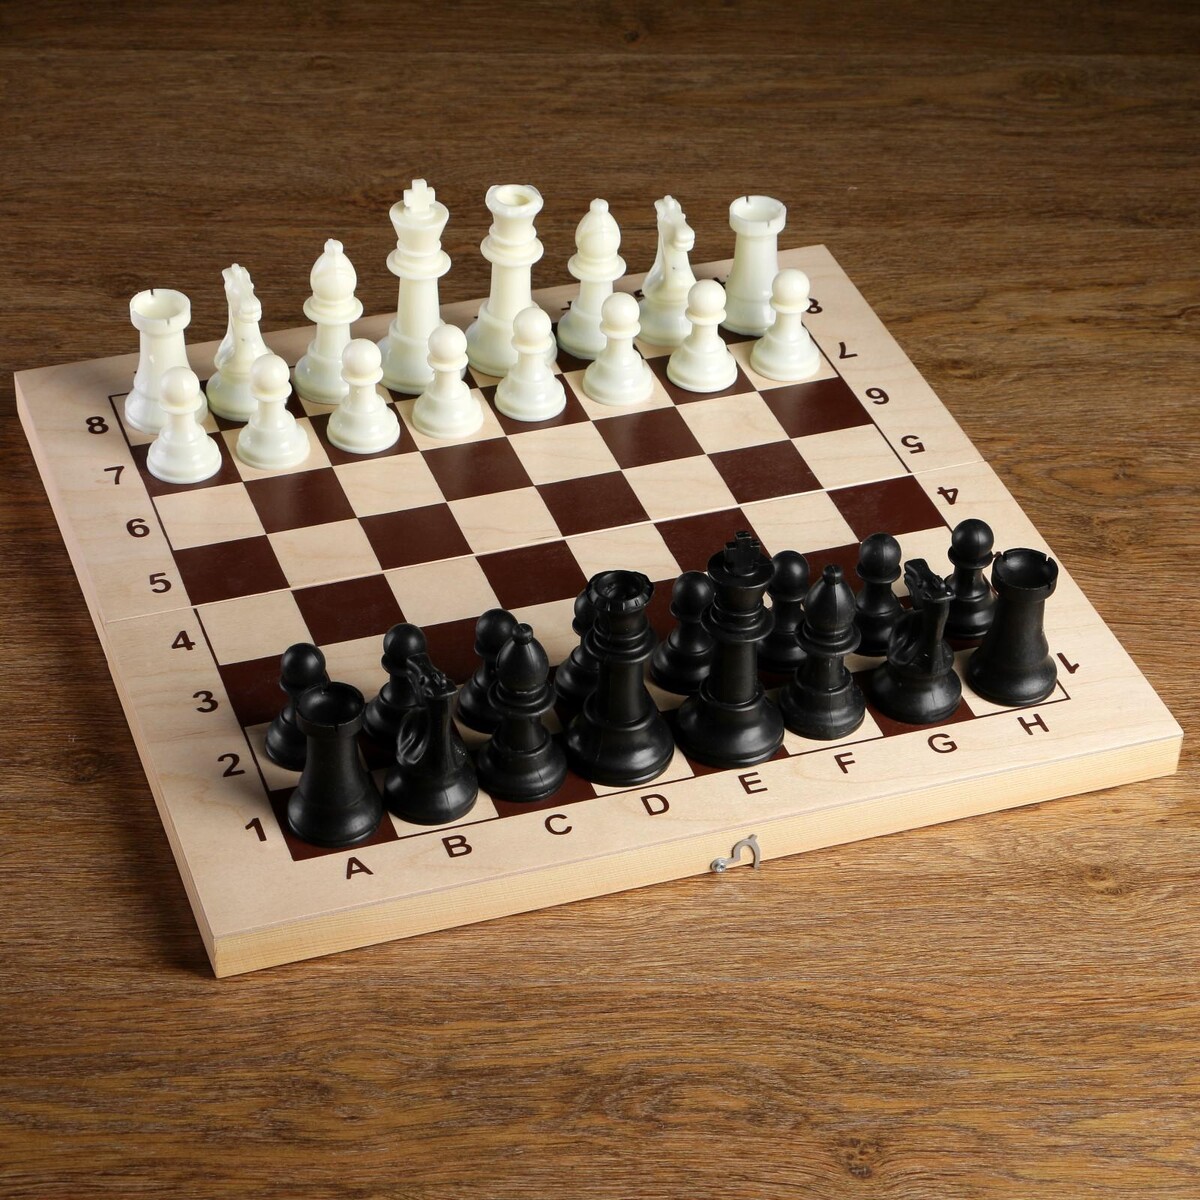 Шахматные фигуры, пластик, король h-10.5 см, пешка h-5 см стрекоза король и драконы